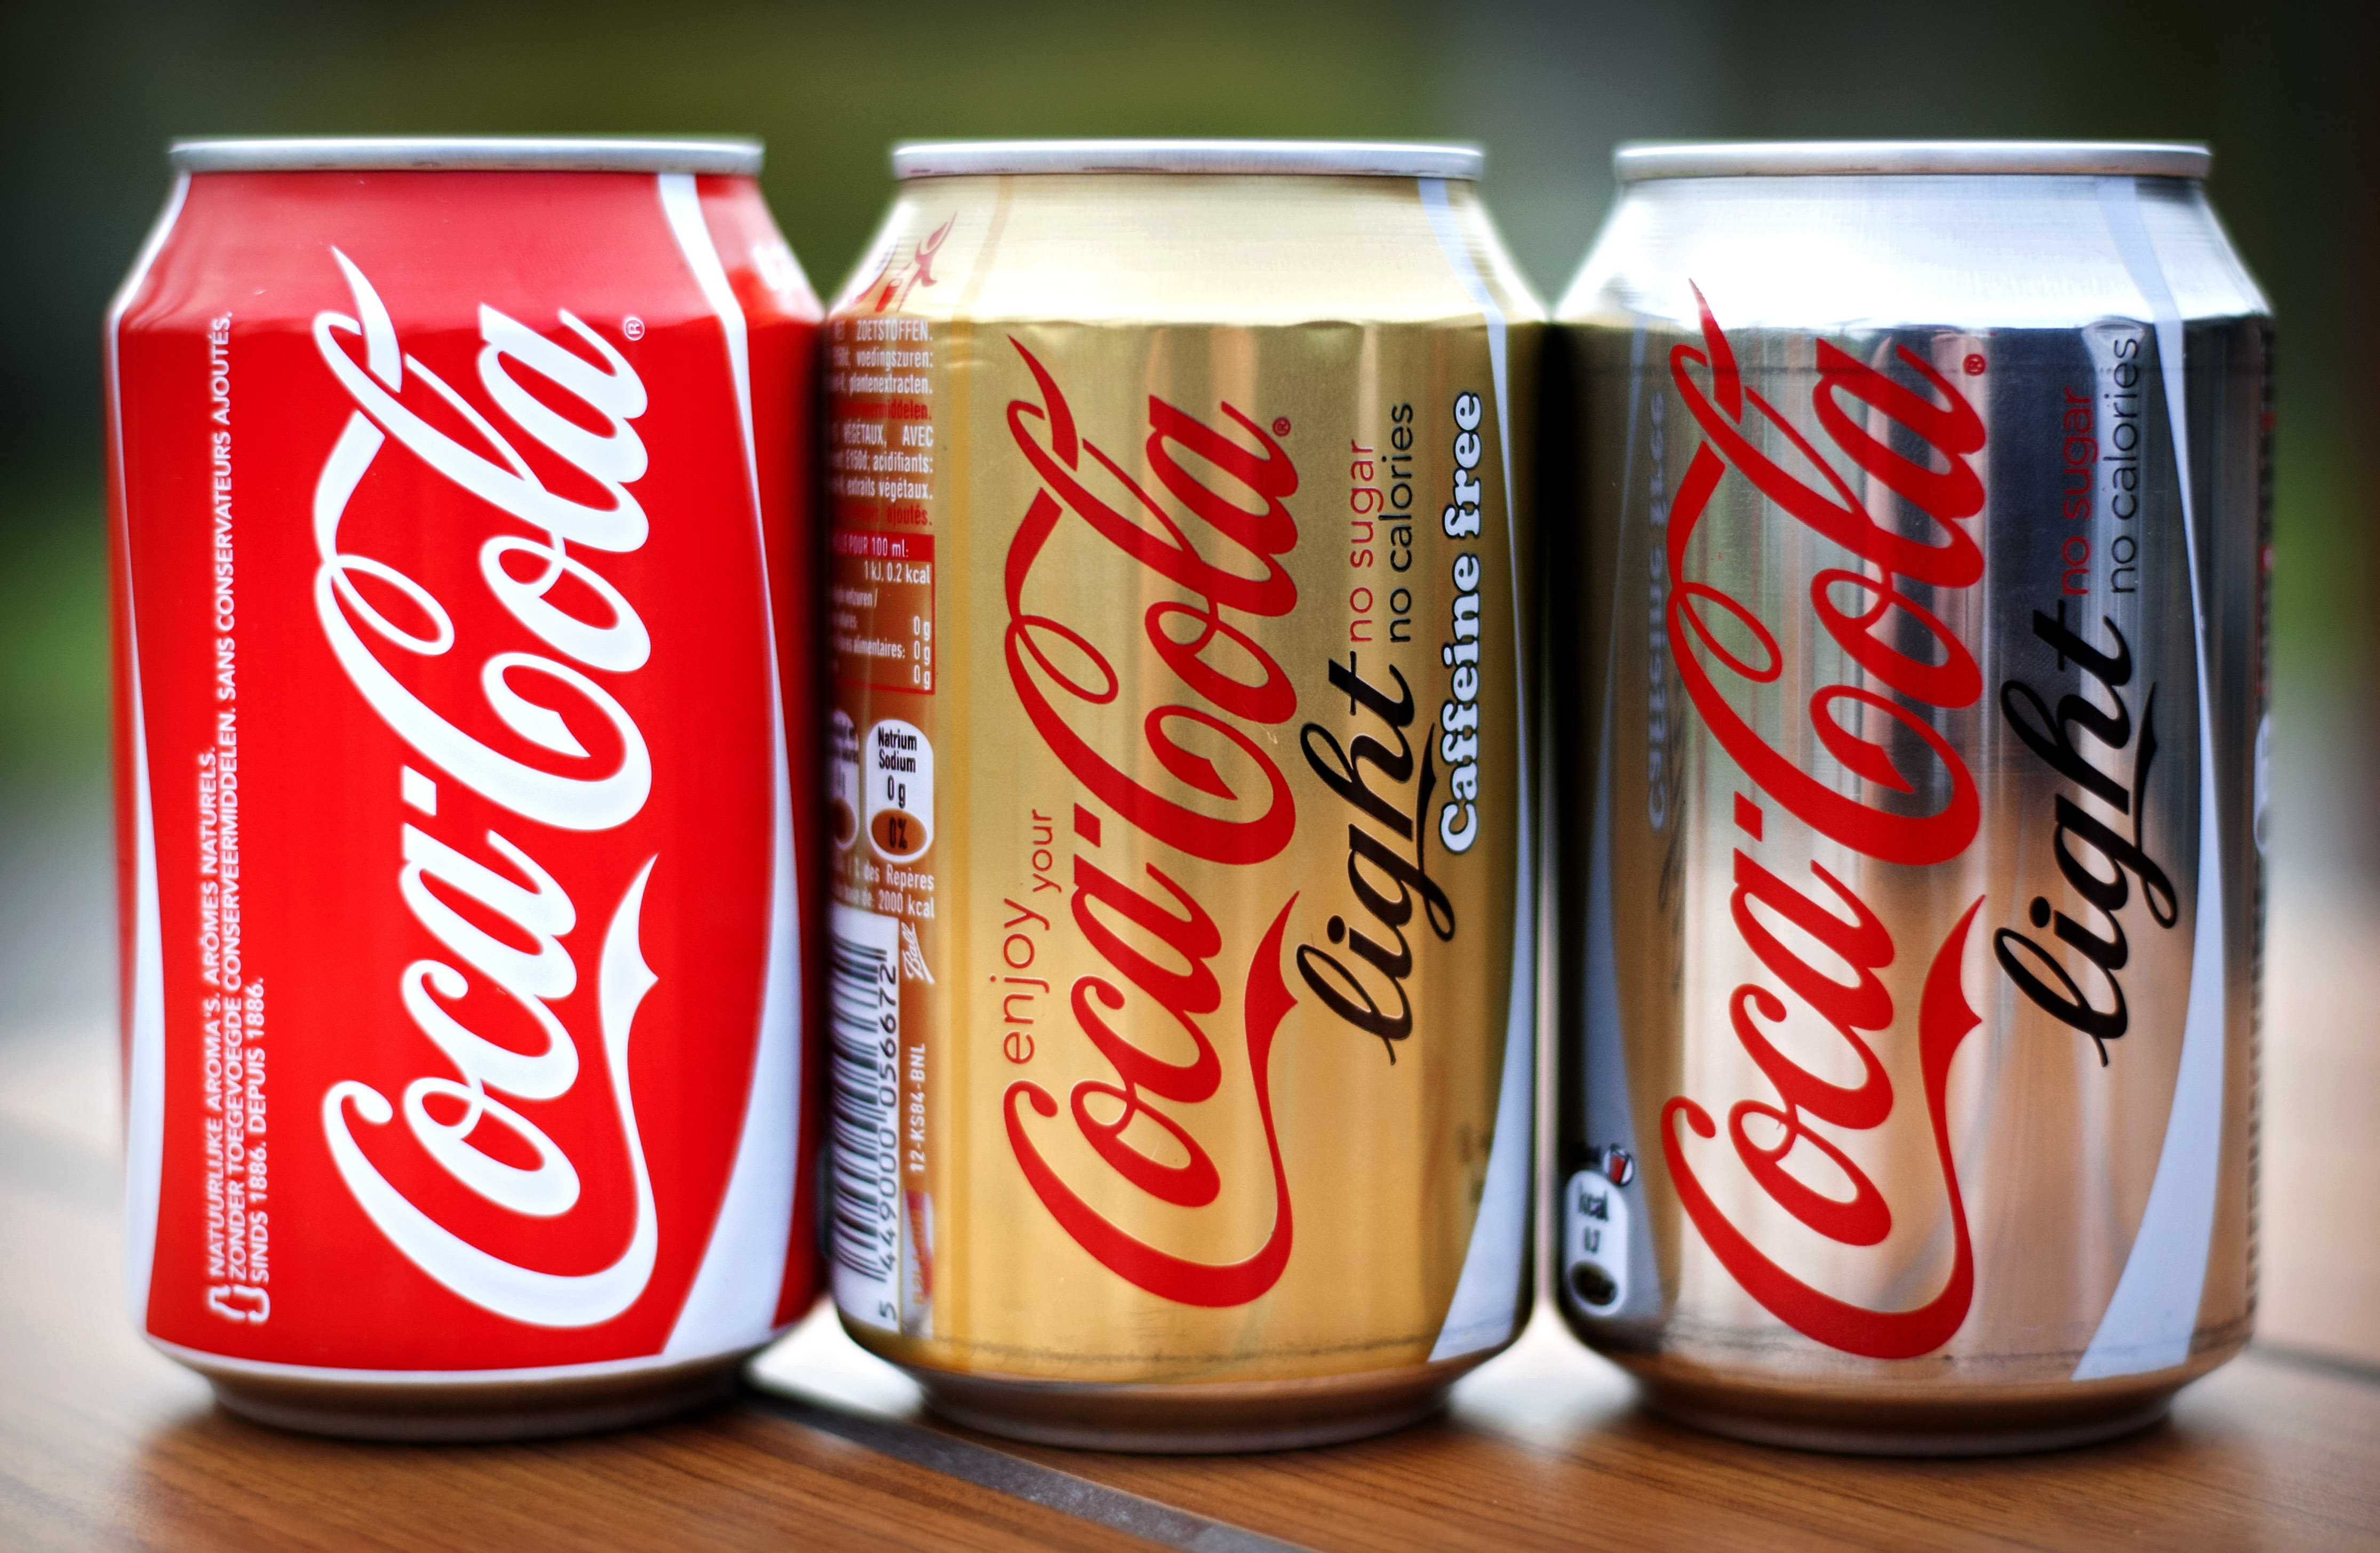 Coca-Cola heeft in het derde kwartaal minder frisdrank verkocht op zijn belangrijke thuismarkt Noord-Amerika. Dat bleek dinsdag uit de kwartaalresultaten van 's werelds grootste frisdrankconcern, dat de afgelopen periode zowel het resultaat als de omzet zag dalen. Coca-Cola realiseerde een winst van circa 2,1 miljard dollar. Dat was een jaar geleden nog bijna 2,5 miljard dollar. De opbrengsten zakten tot bijna 12 miljard dollar. Het bedrijf denkt dat de winstgroei dit jaar lager uitvalt dan de doelstelling voor de lange termijn, zo gaf topman Muhtar Kent aan. De onderneming verwacht verder dat bijvoorbeeld negatieve wisselkoerseffecten een negatieve invloed zullen hebben op het resultaat van komend jaar. Eerder dit jaar kondigde het concern een groot stappenplan aan om de groei op de lange termijn nieuw leven in te blazen. Coca-Cola maakte dinsdag bekend dat het begonnen is met ingrepen om vanaf 2019 op jaarbasis 3 miljard dollar te besparen. Als onderdeel van de besparing worden veel distributiegebieden in Amerika verkocht aan onafhankelijke bottelarijen.